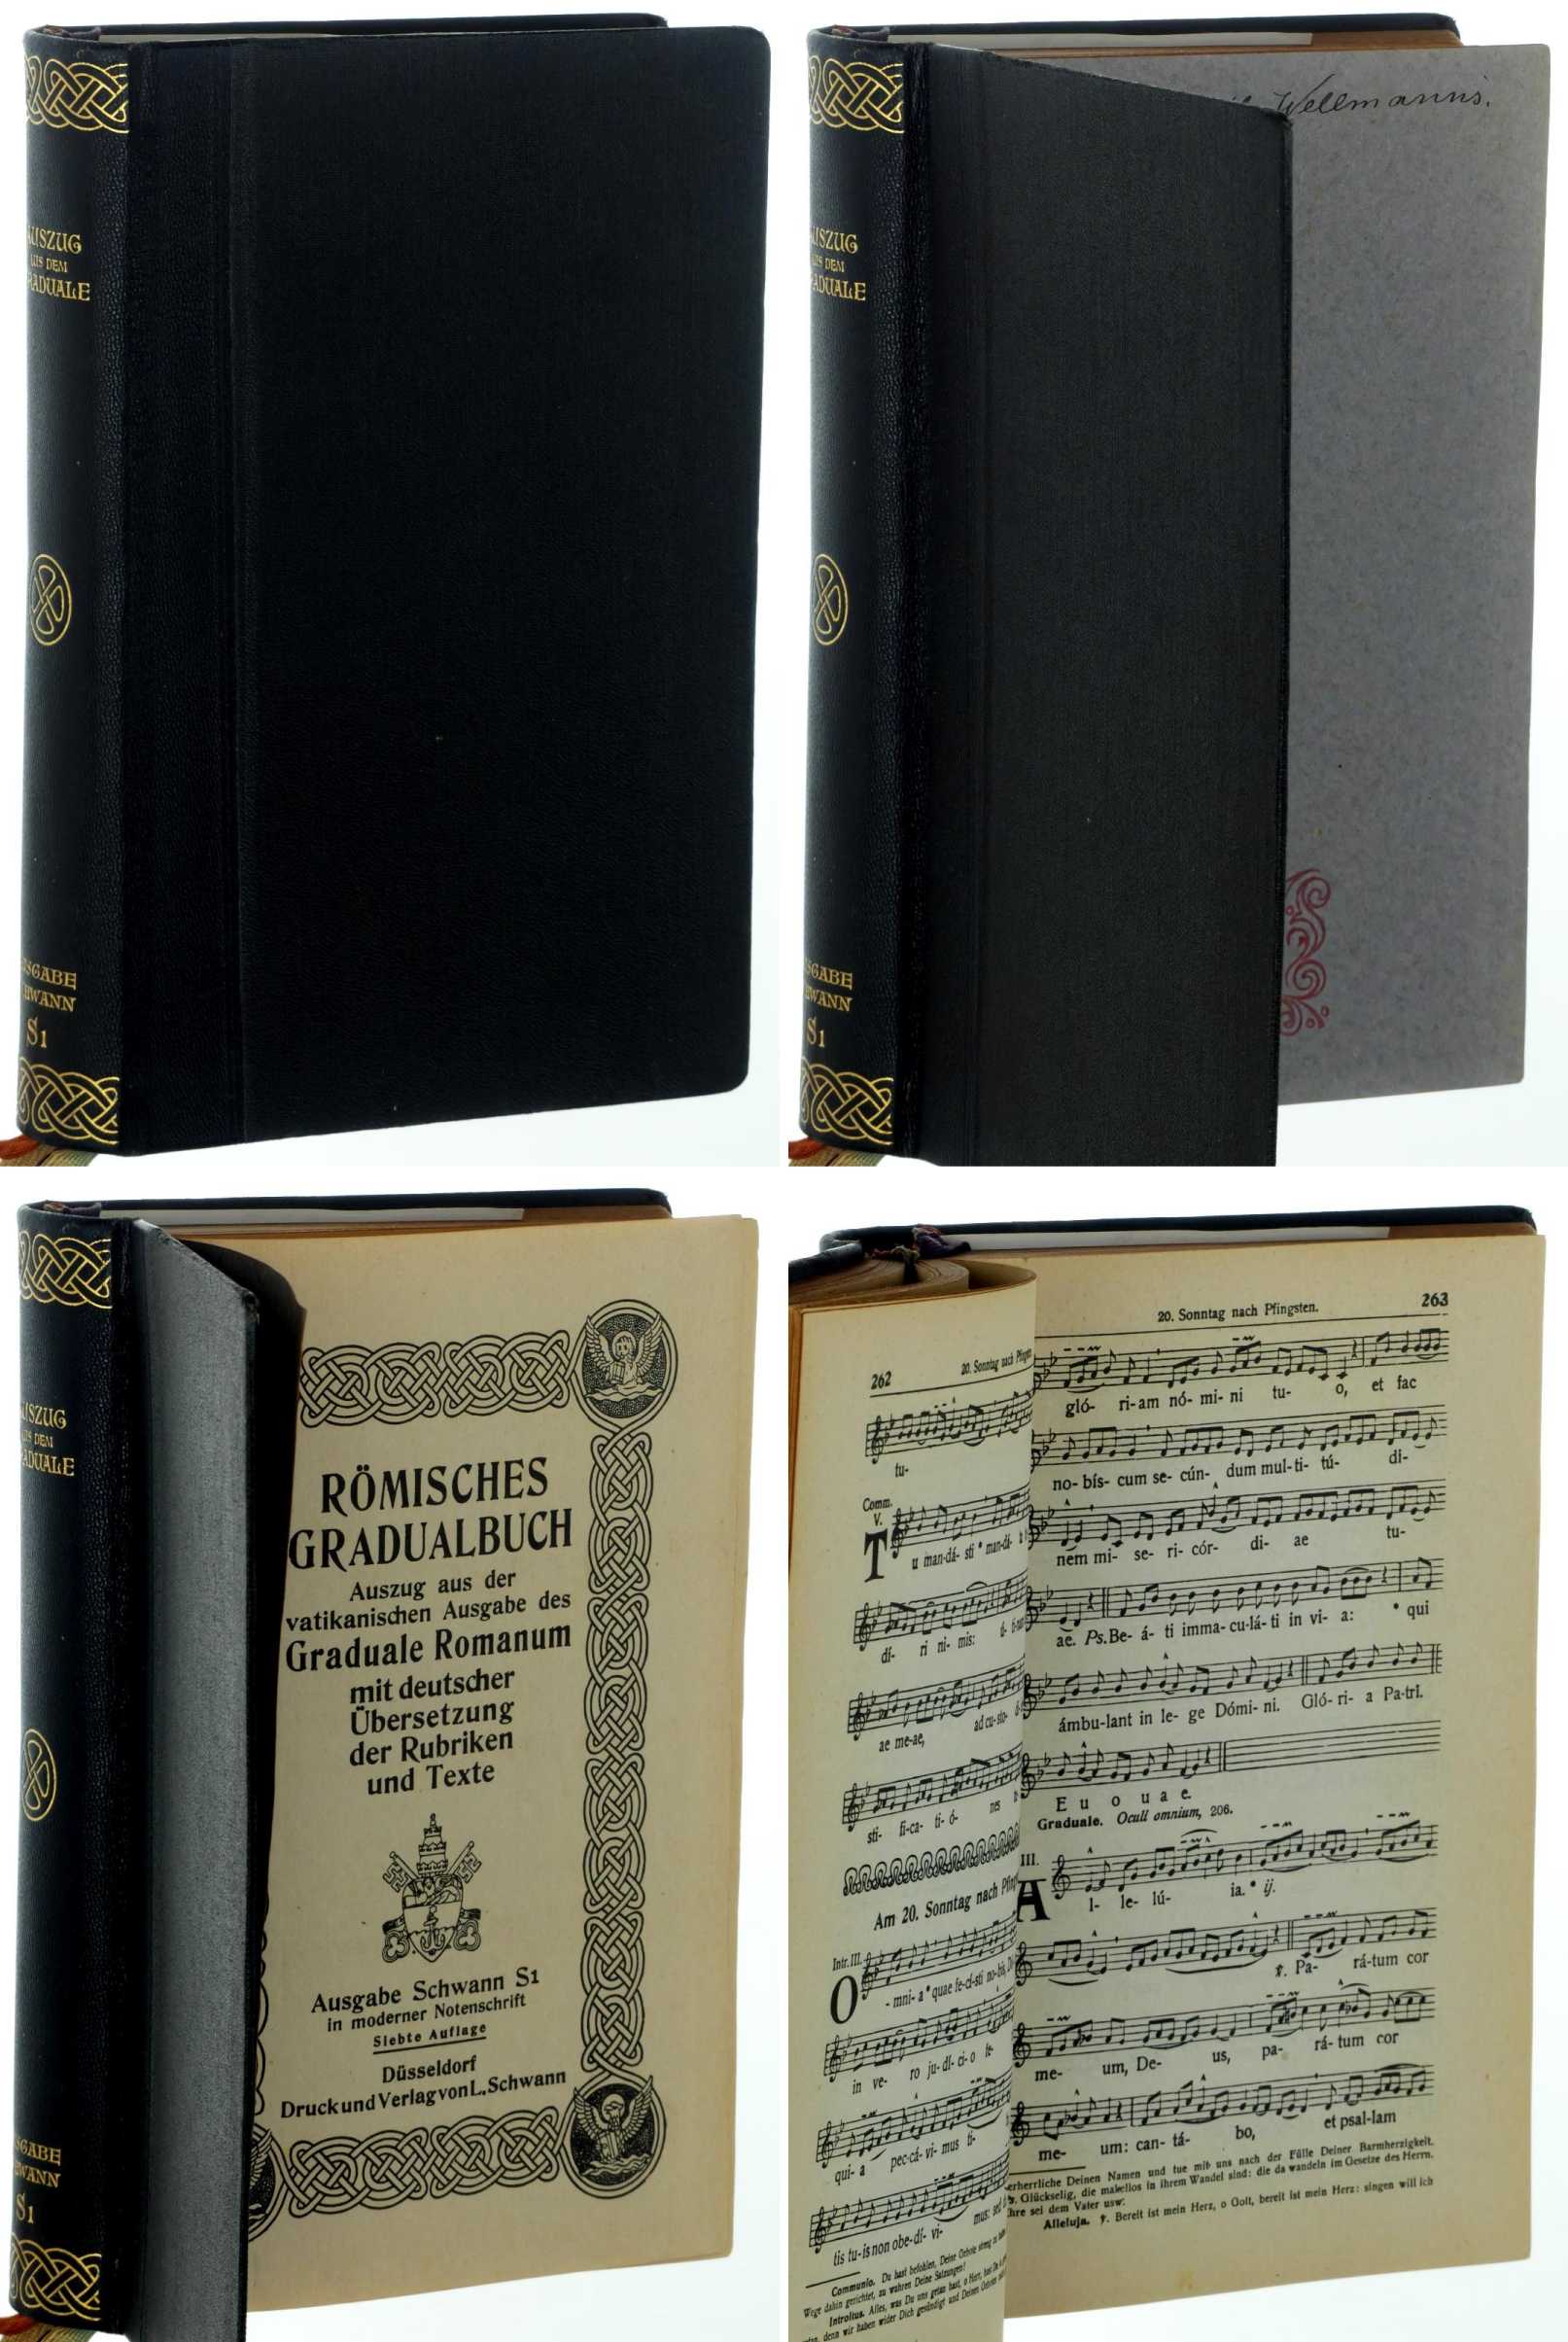 Gradualbuch.  Auszug aus der Vatikanischen Ausgabe des Graduale Romanum Editio Vaticana mit deutscher Übersetzung der Rubriken und Texte. 